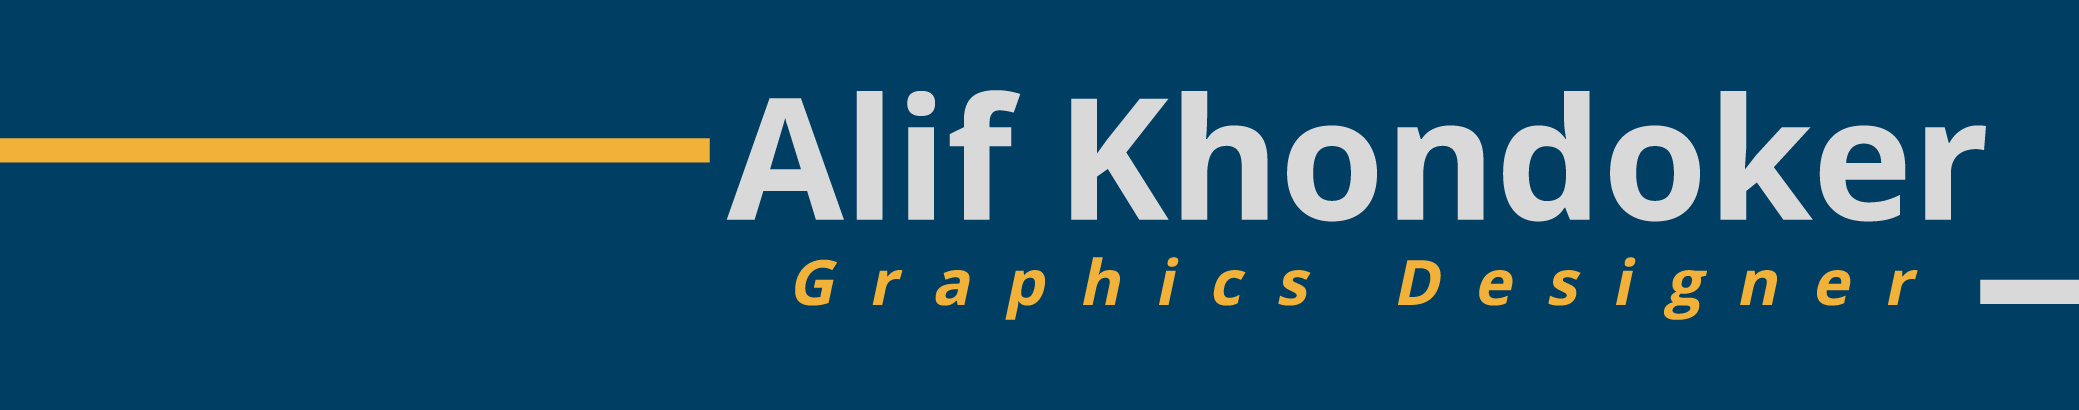 Alif Khondoker's profile banner